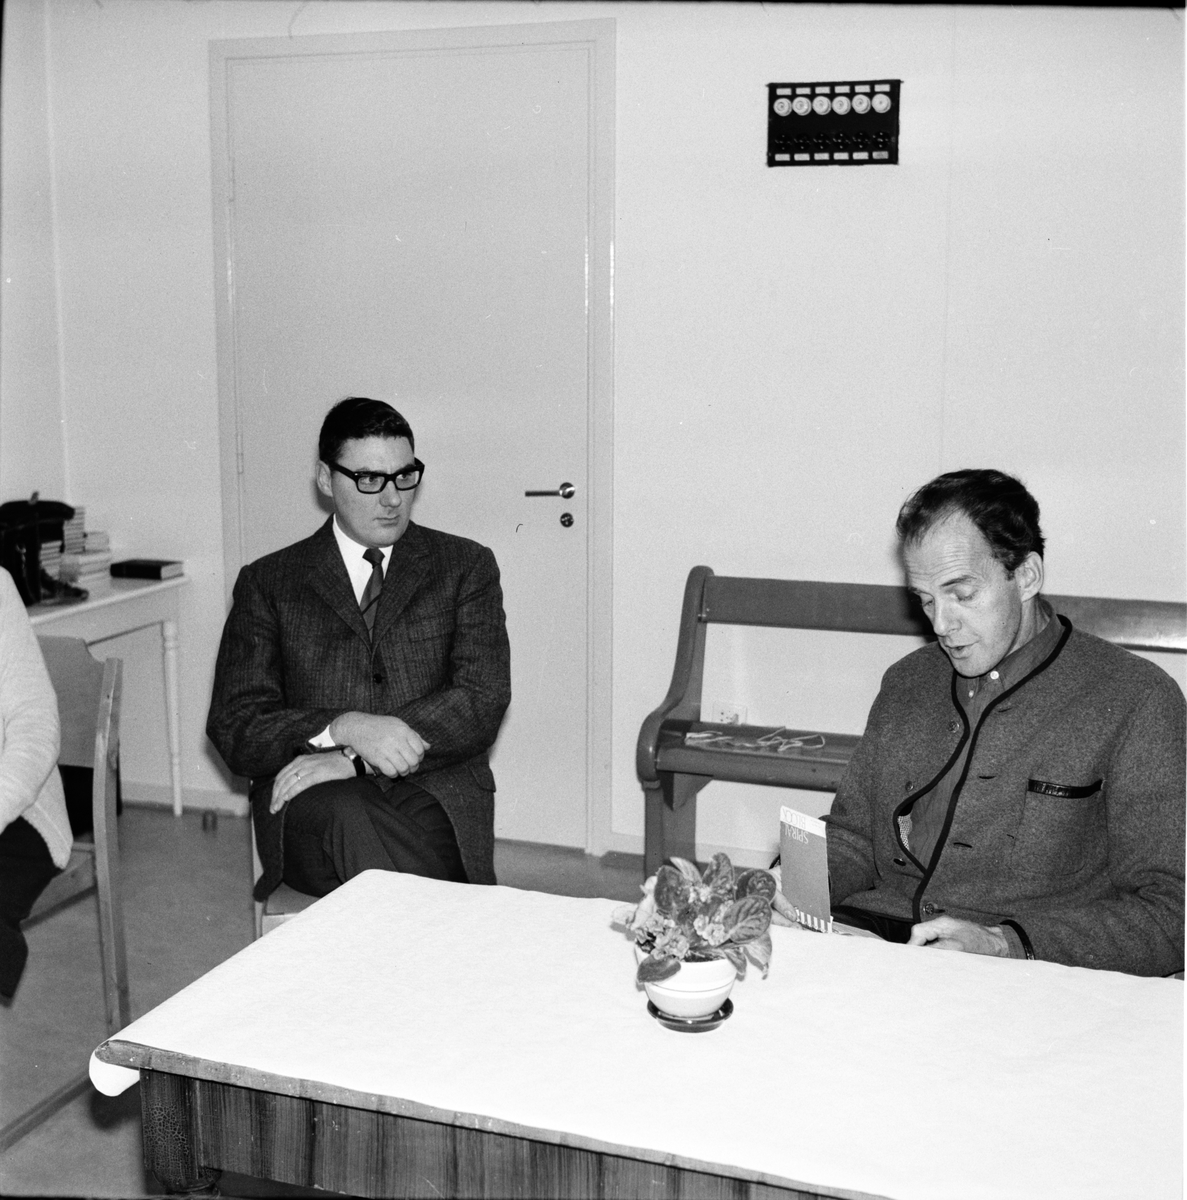 Vallsta, Karl Rune Nordkvist på pensionärsträff i Vallsta Missionskyrka med Viggo Junkes.
December 1967